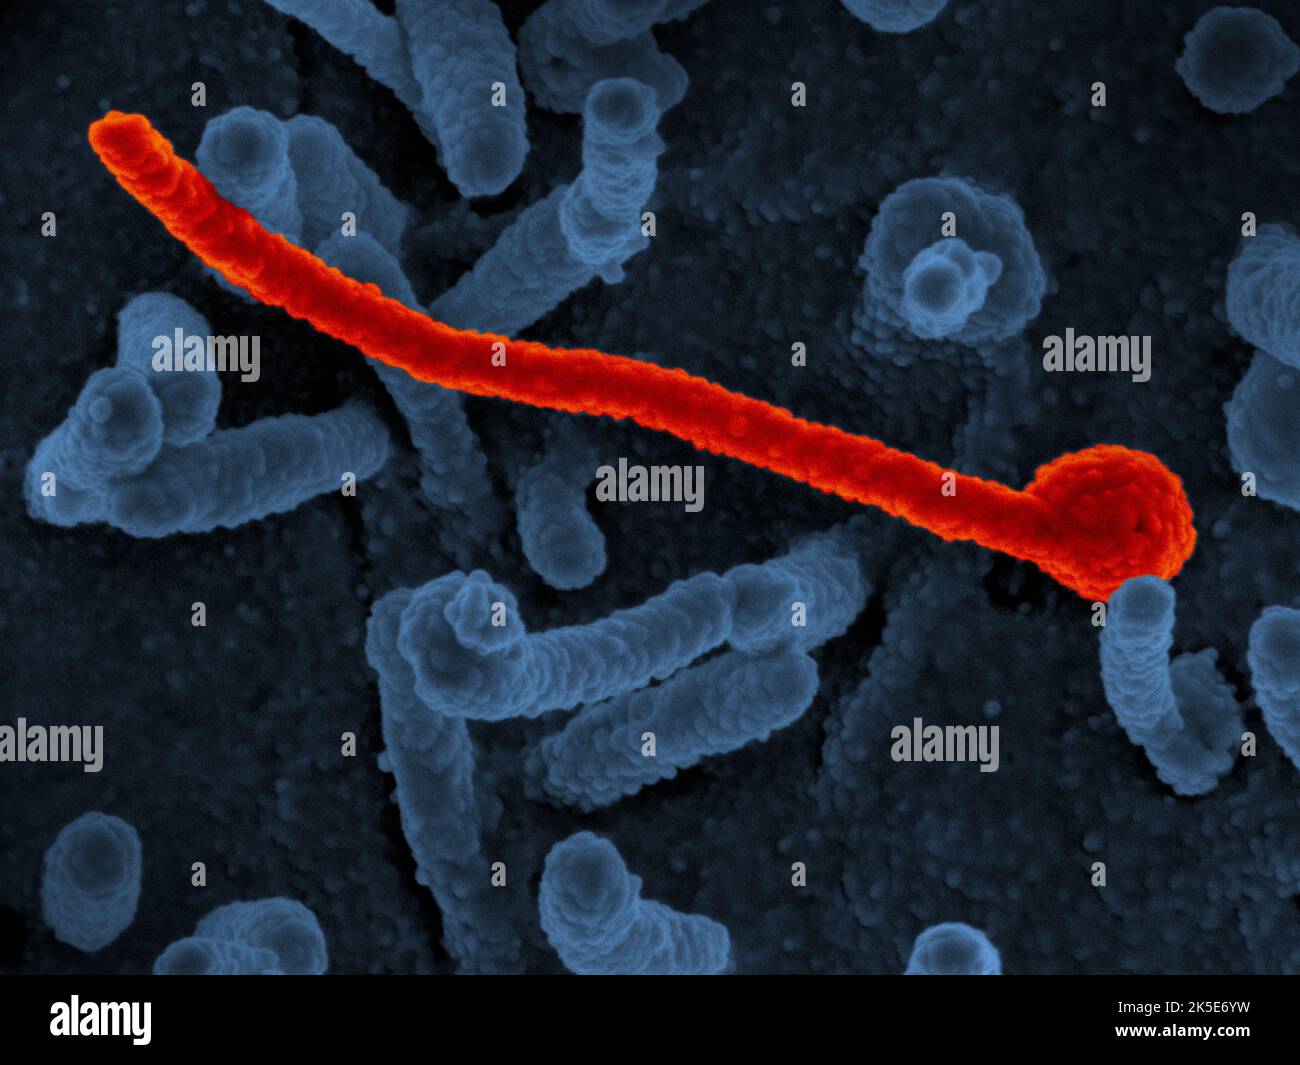 Ebola-Virus Makona. Auf der Oberfläche von Vero-Zellen (blau) wurde eine Rasterelektronenmikroskopie des Ebola-Virus Makona (rot dargestellt) aus der westafrikanischen Epidemie gezeigt.Wissenschaftler spekulierten, dass die genetische Vielfalt des zirkulierenden Makona-Virusstamms (EBOV-Makona) zu einer schwereren Erkrankung und einer höheren Übertragbarkeit führen würde als frühere Stämme, Doch mithilfe zweier unterschiedlicher Tiermodelle stellten Wissenschaftler fest, dass sich bestimmte Mutationen während der Epidemie frühzeitig stabilisierten und die Darstellung oder das Ergebnis der Ebola-Krankheit nicht veränderten. Kredit: National Institute of Allergy and Infectious Diseases, NIH Stockfoto